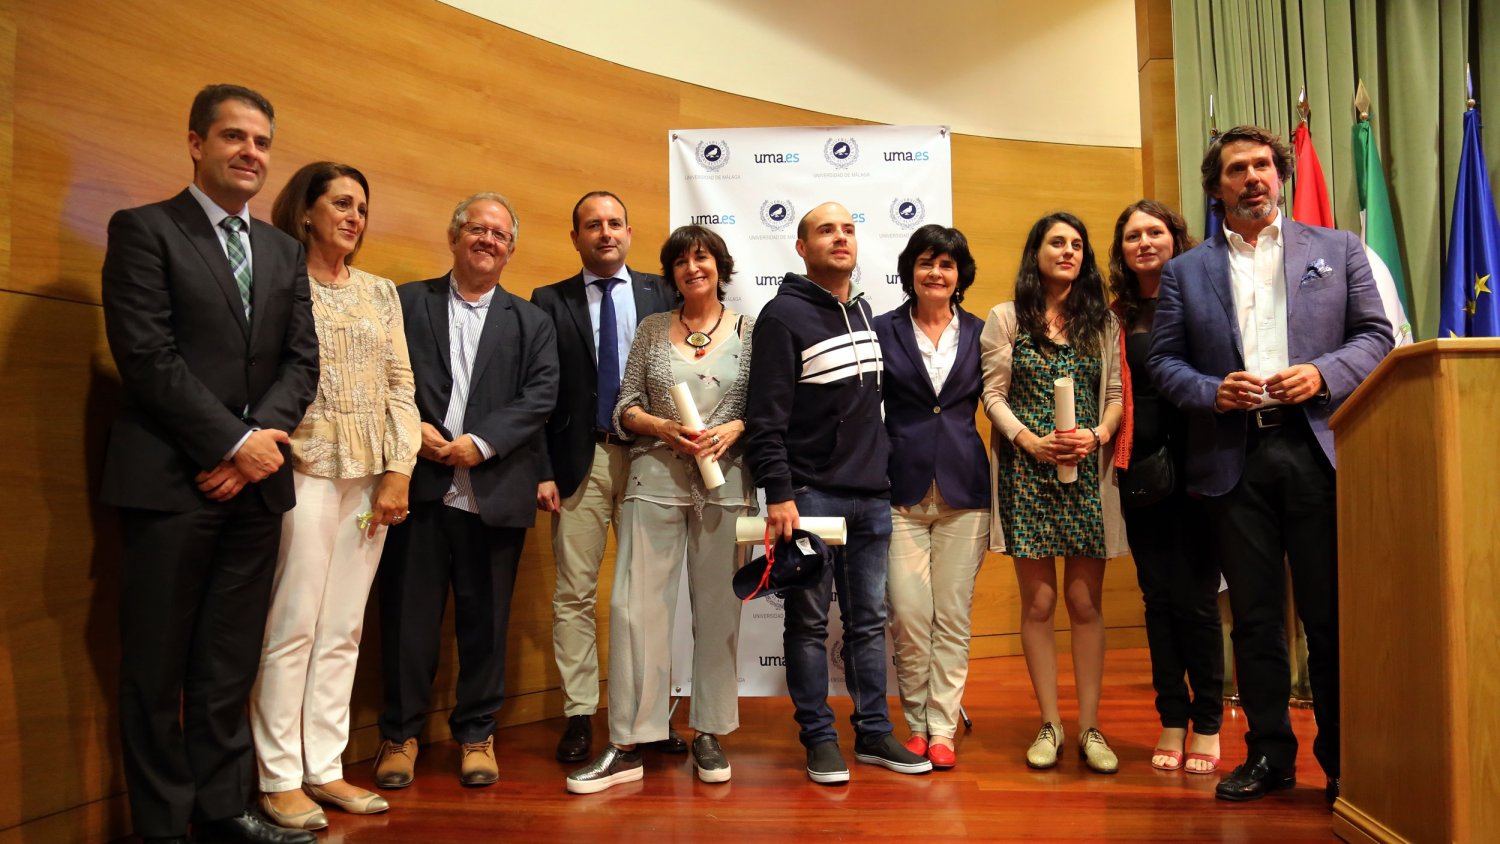 Majo Siscar y Rosa Montero reciben el premio de periodismo Manuel Alcántara